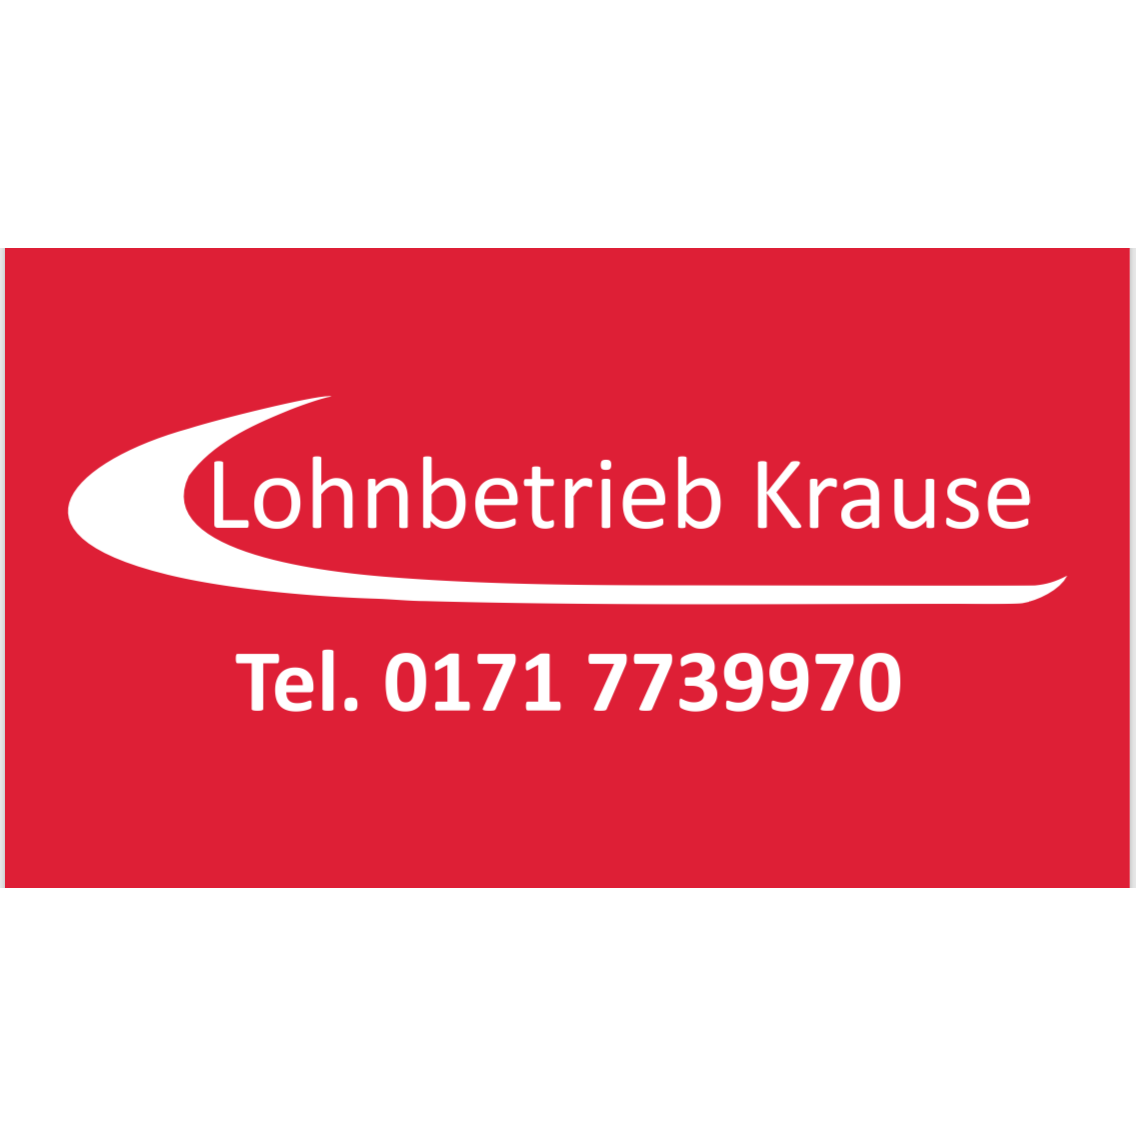 Lohn- und Fuhrbetrieb Heiko Krause in Märkische Heide - Logo